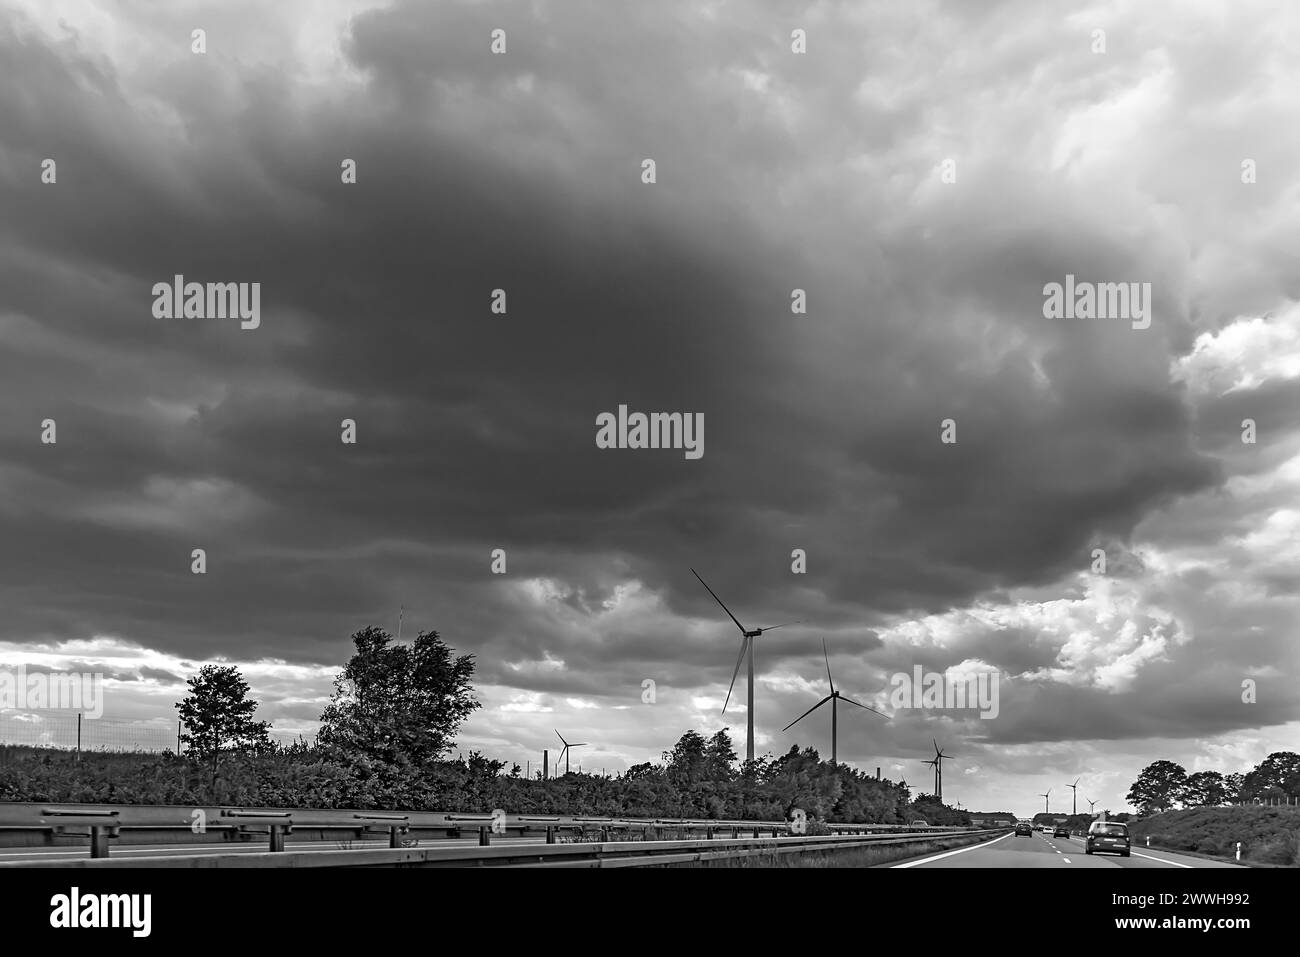 Éoliennes sur l'autoroute A 9, ciel nuageux, Thuringe, Allemagne Banque D'Images